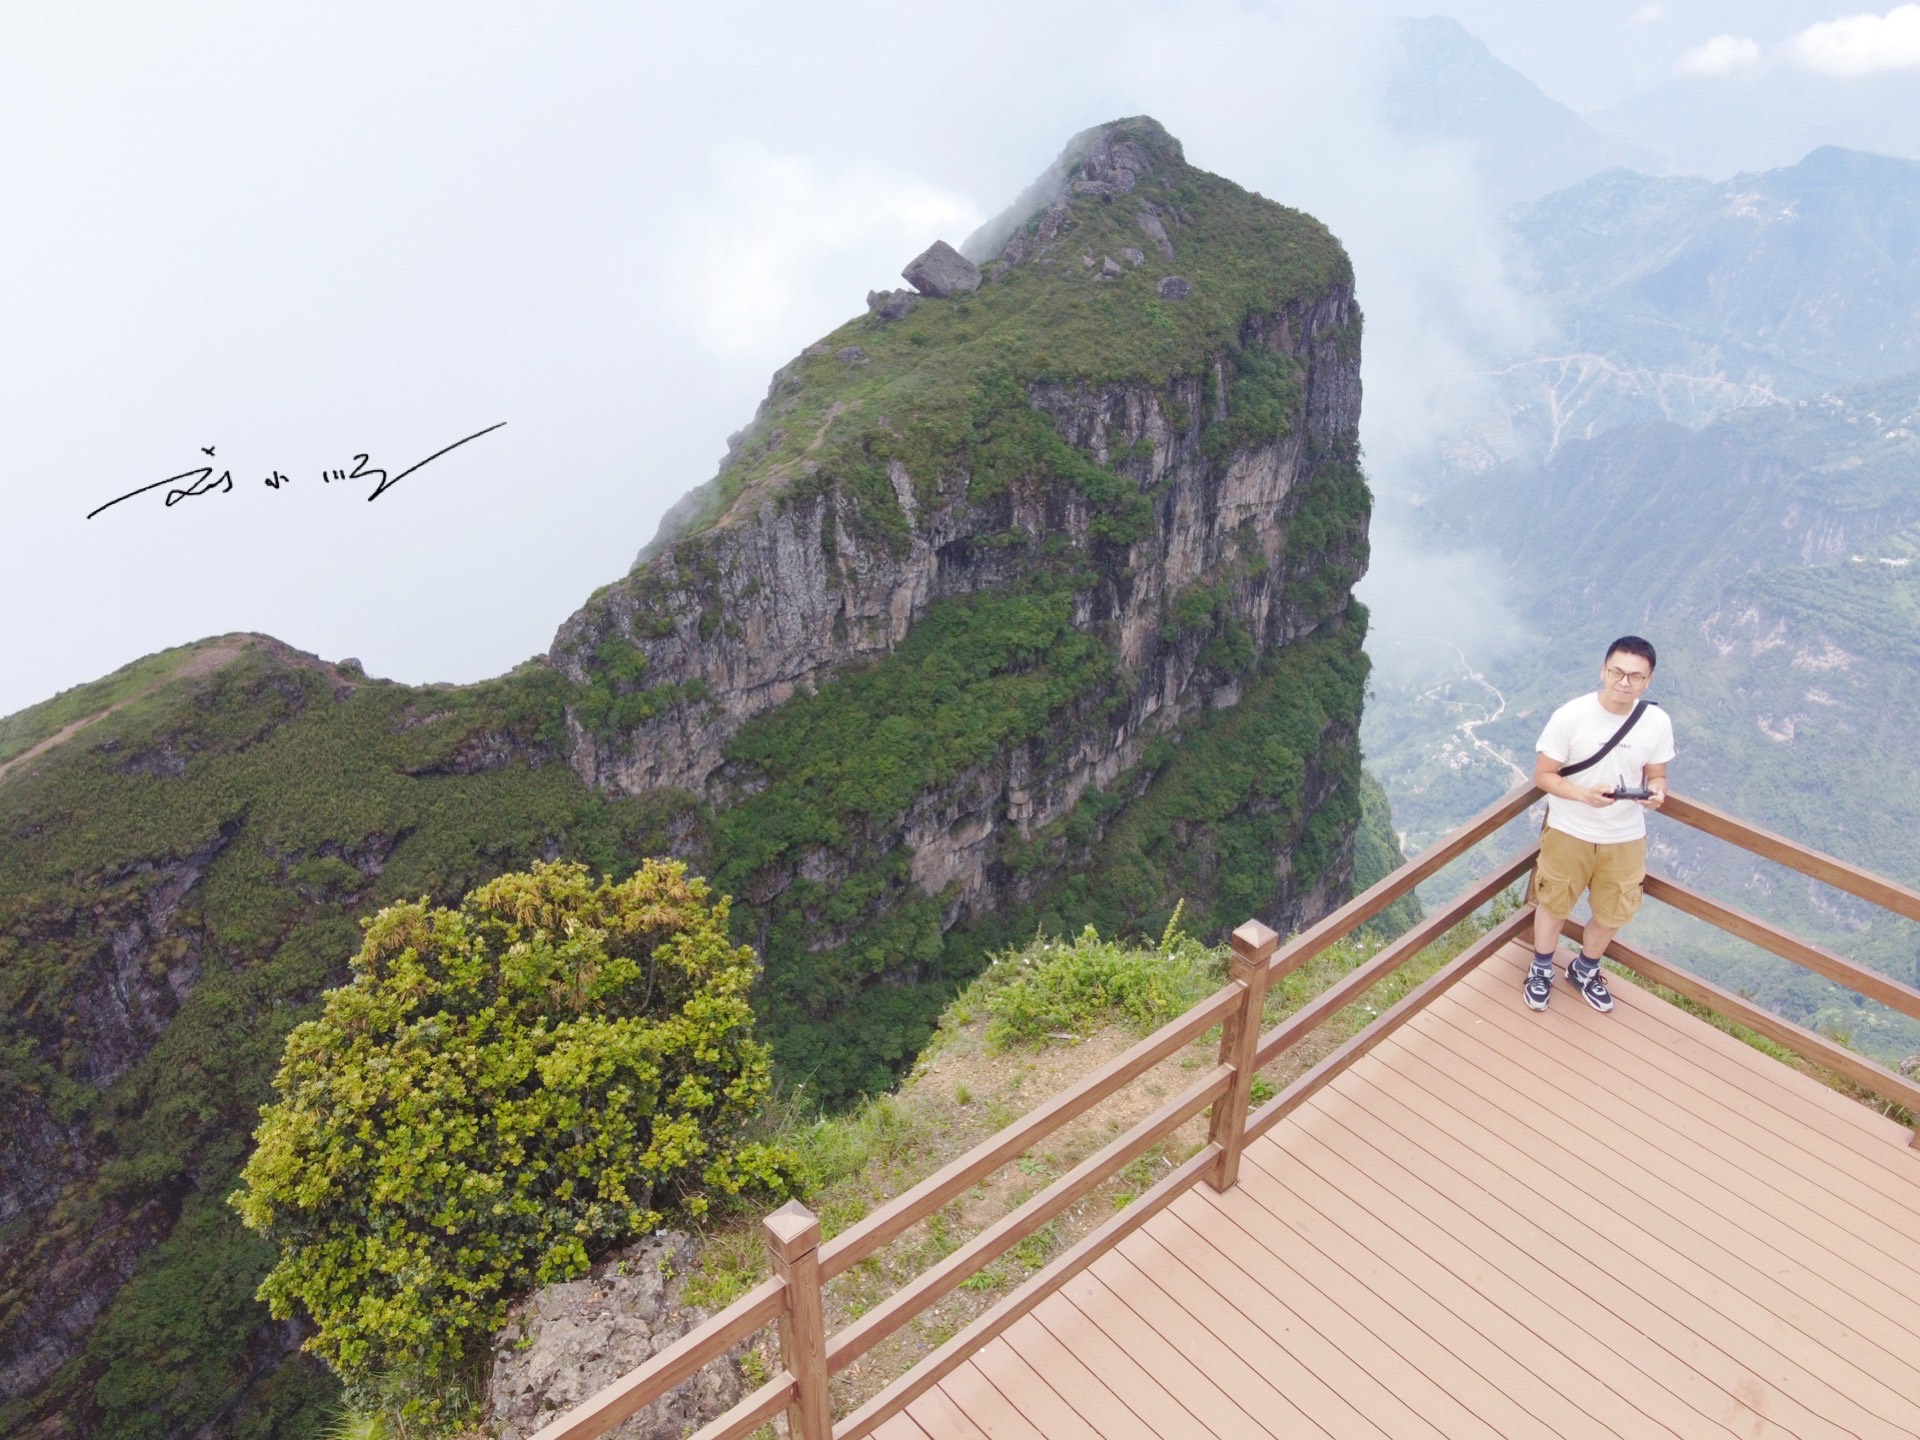 实拍云南昭通鸡公山,三面绝壁,峡谷深达2600米,游客却不多